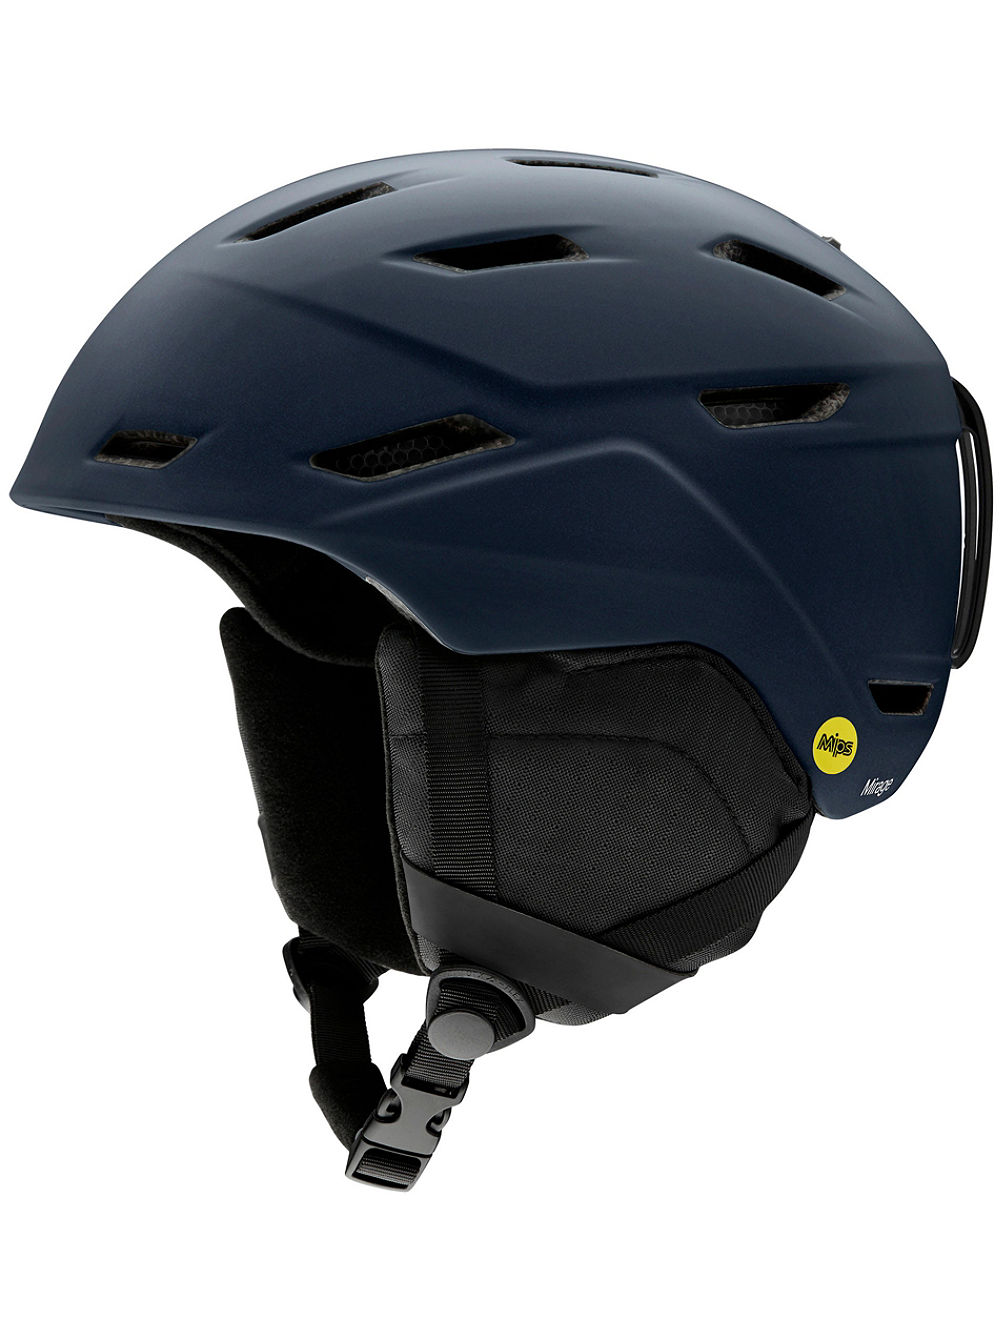 Mirage MIPS Helmet